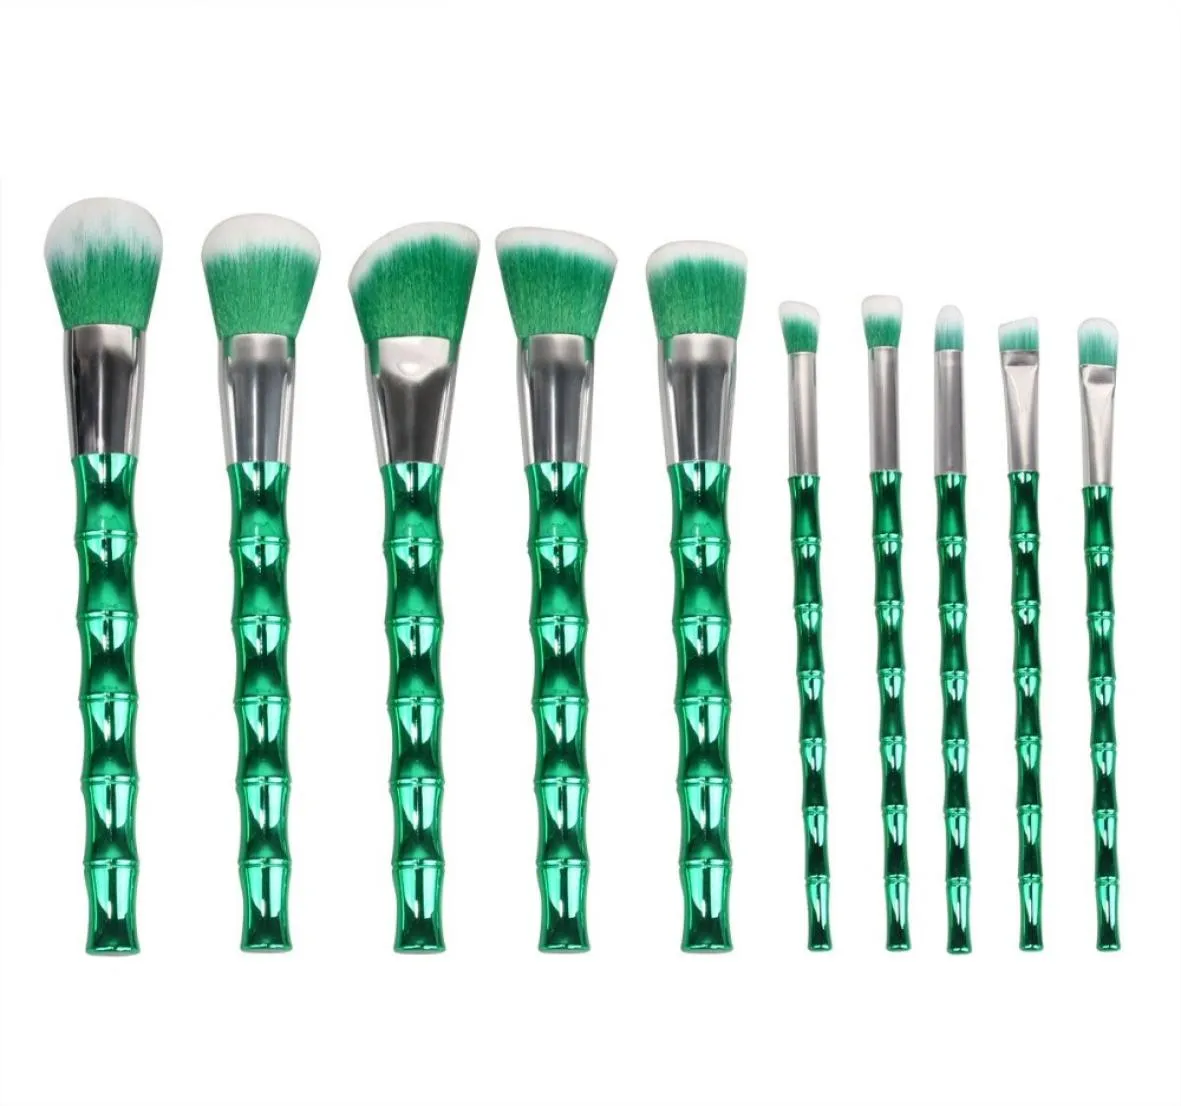 ISMINE 10 PCS Novos pincéis baratos da moda de maquiagem verde -maquiagem em forma de bambu verde Ferramentas de cosméticos Kit5781571